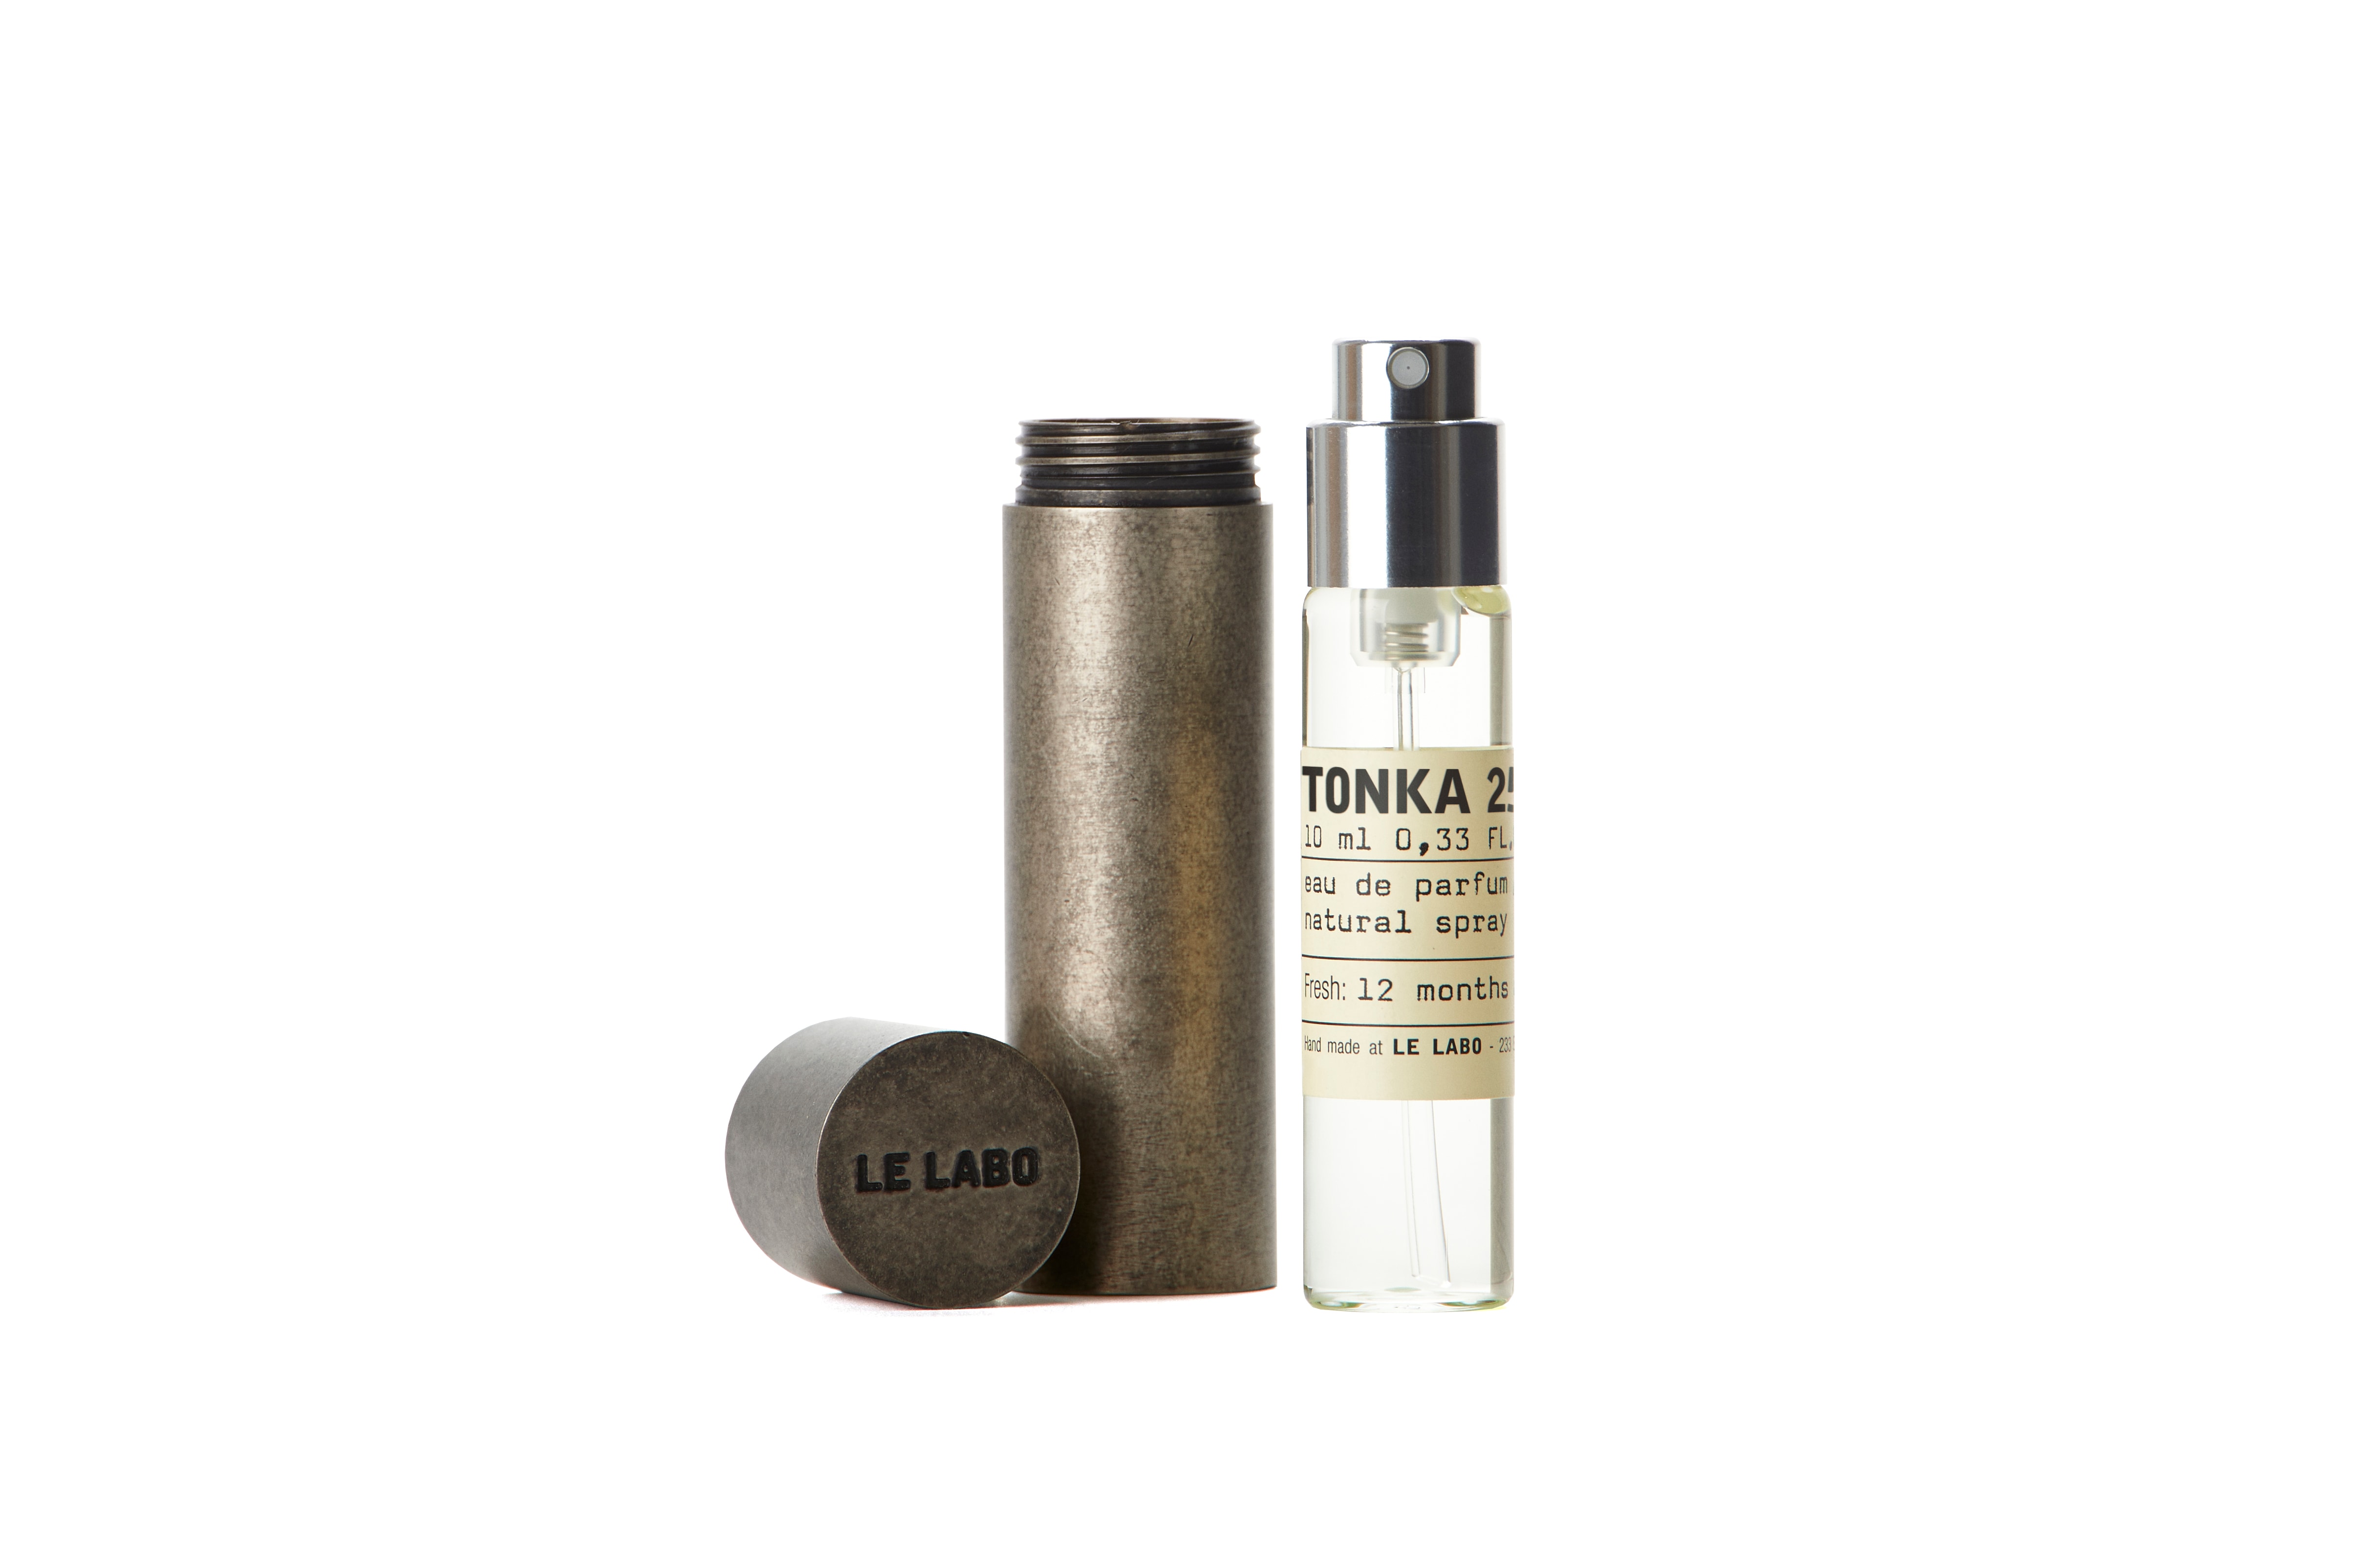 Le Labo Tonka 25 New Fragrance Perfume Beauty